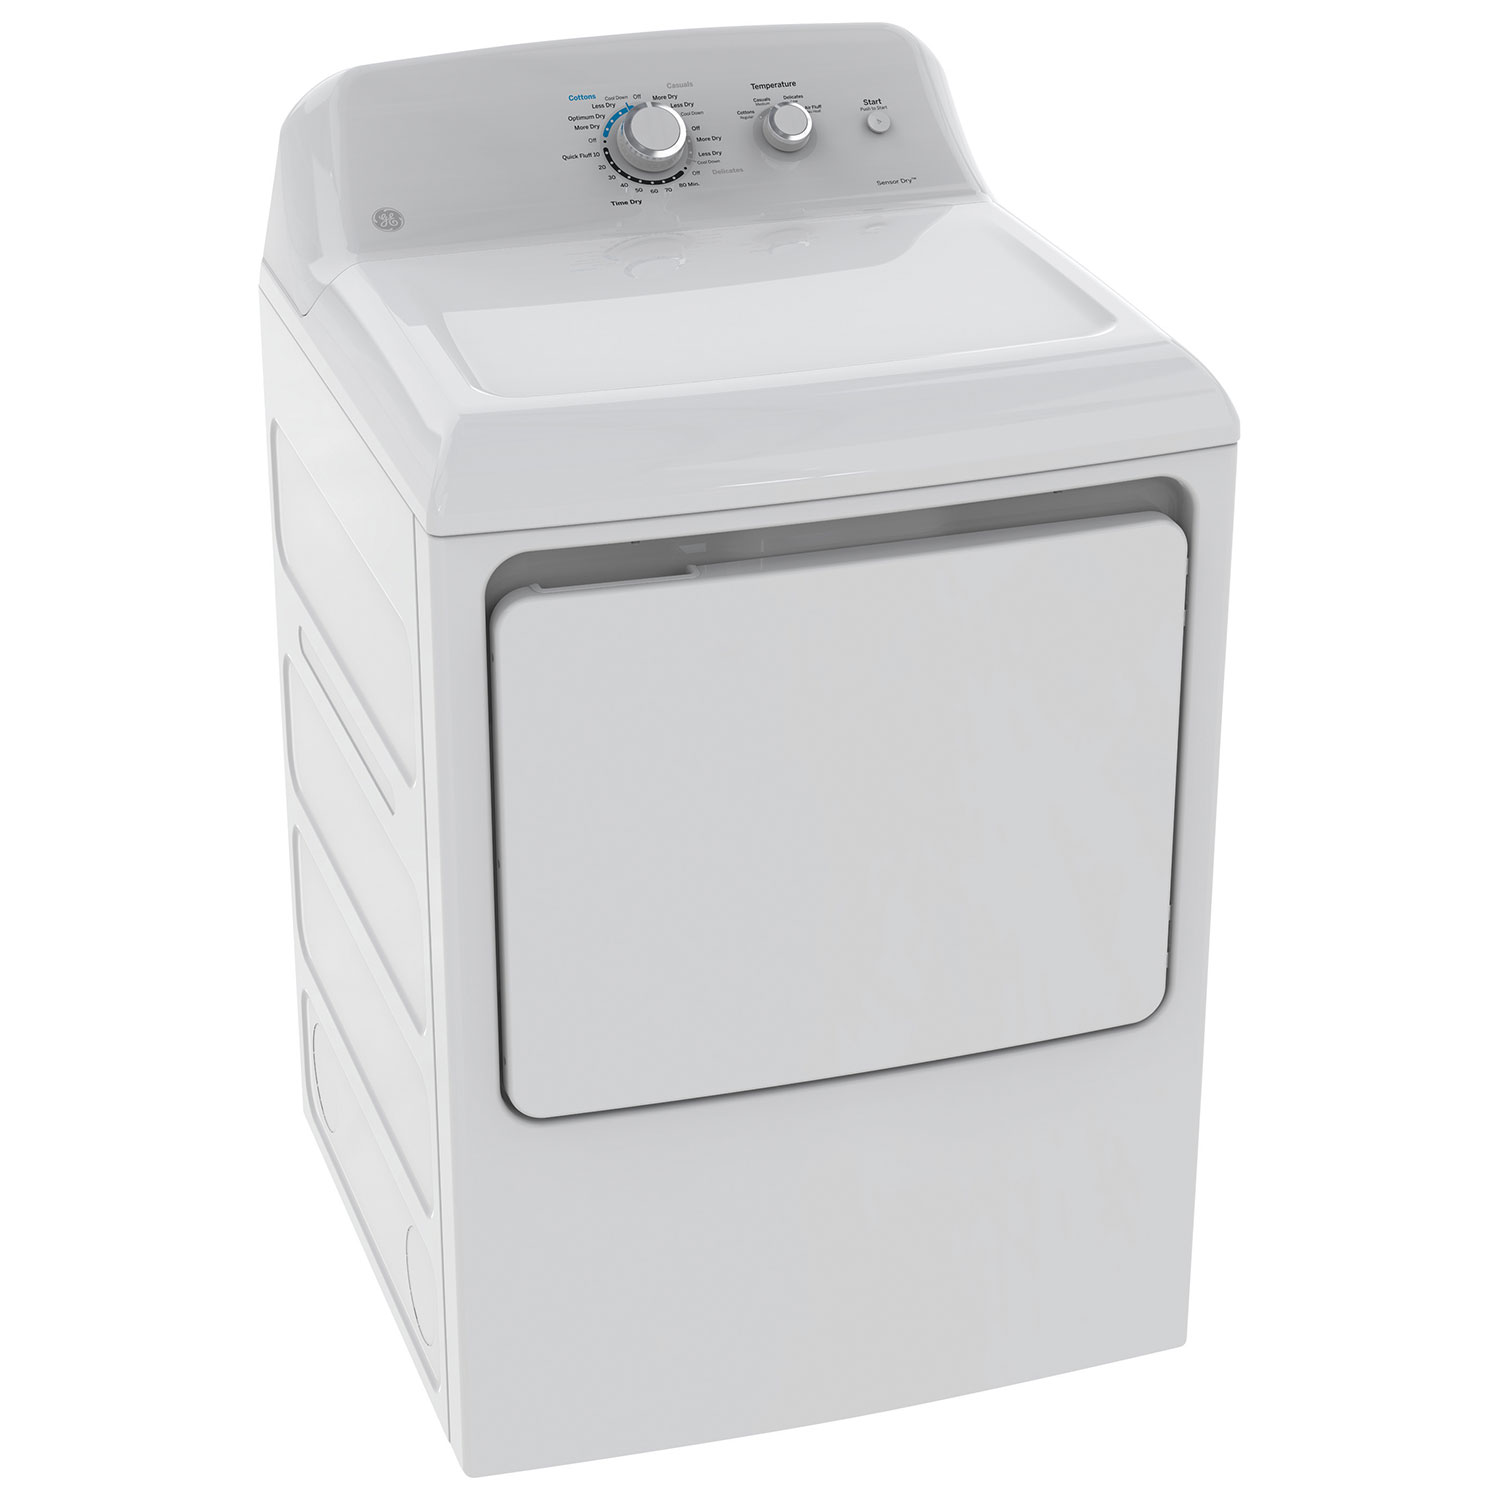 GE Electric Dryer 7.2 Cu. Ft (GTD40EBMKWW)